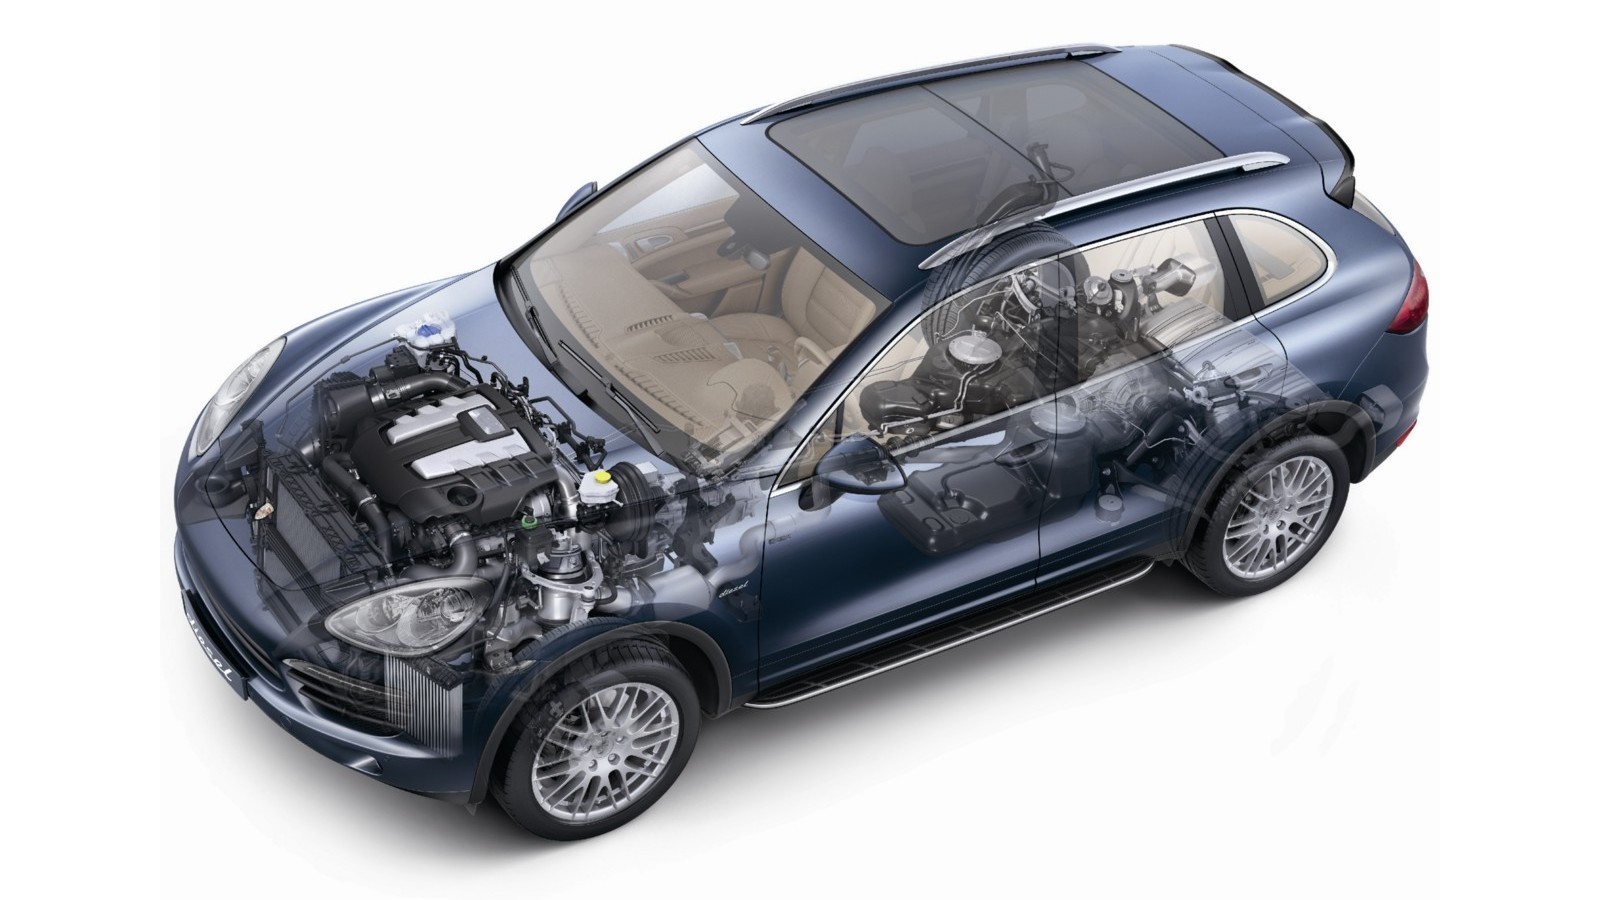 Самые надёжные дизельные двигатели | АВТО INFO